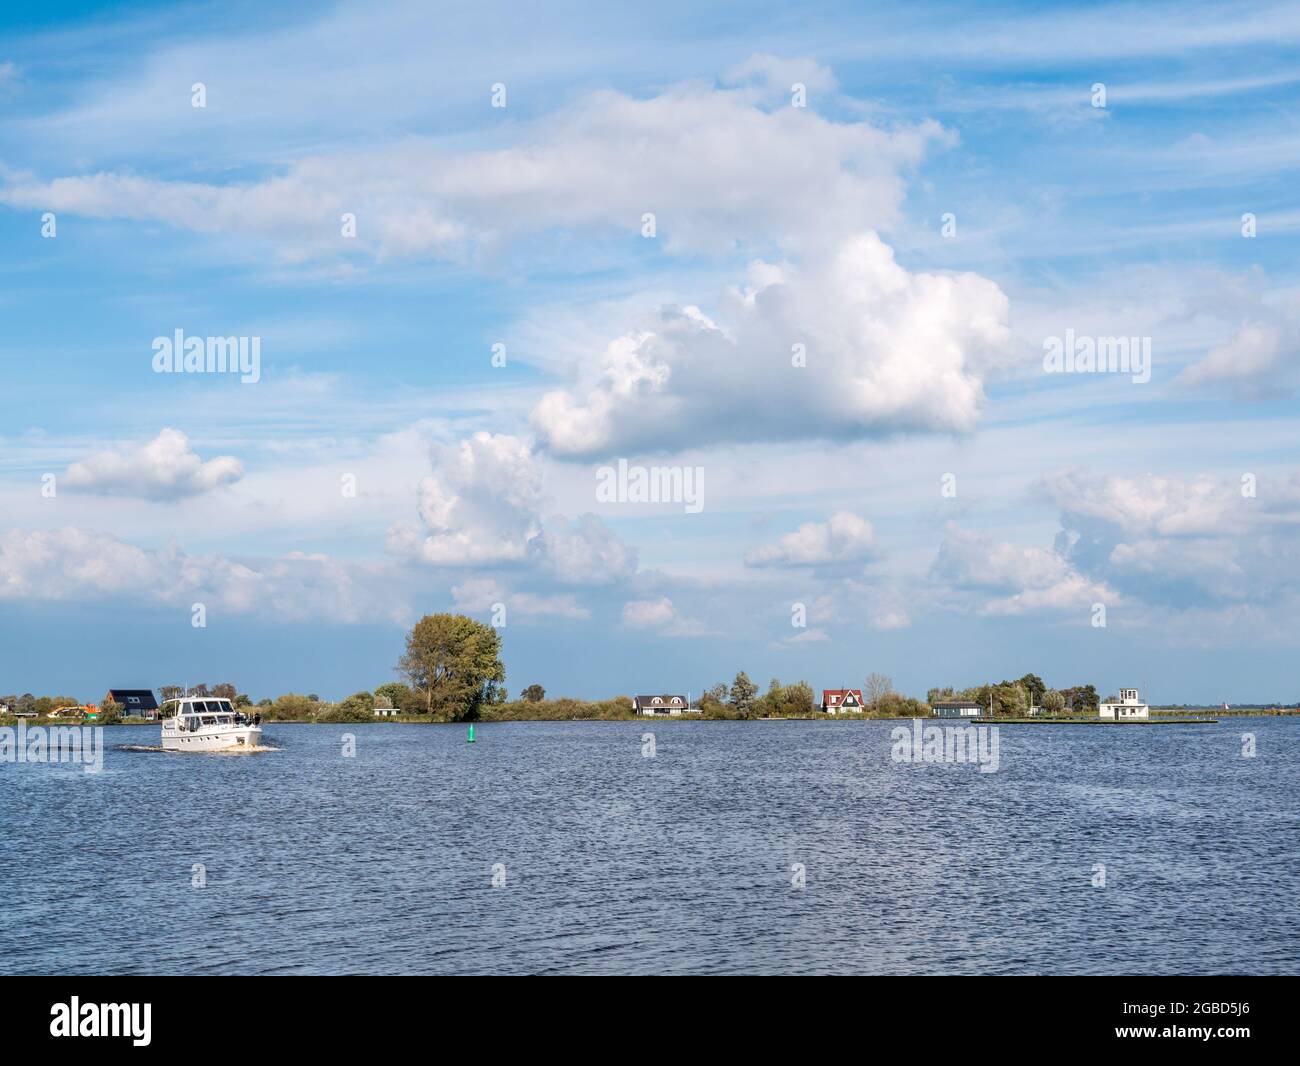 Bootstour auf dem Pikmeer-See in Grouw, einem der friesischen Seen in Friesland, Niederlande Stockfoto